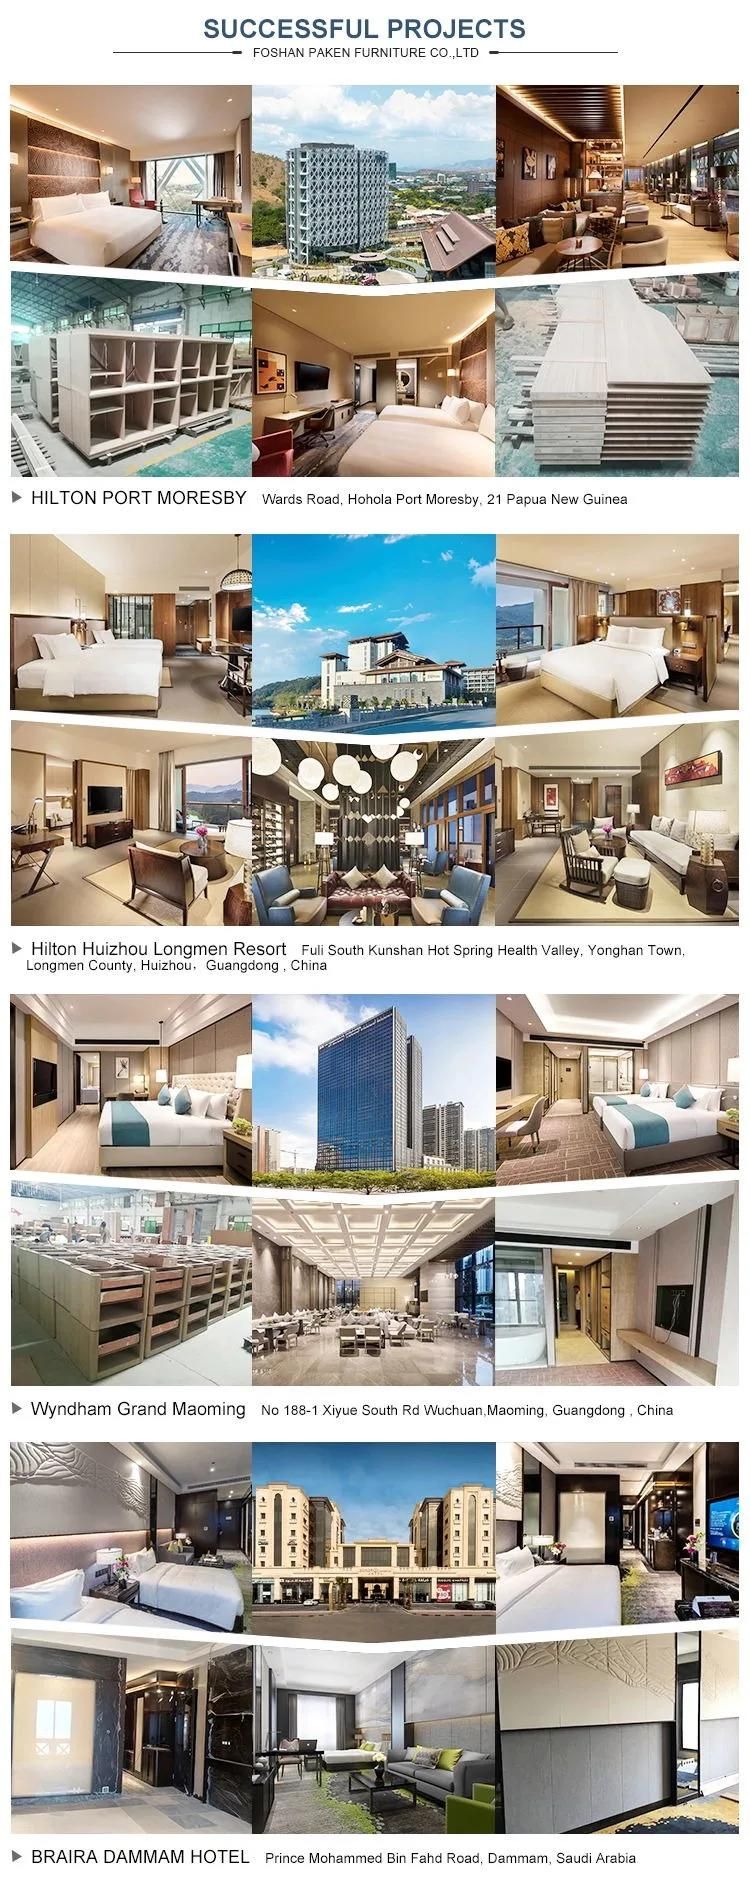 5 Star Luxury Presidential Bedroom Set of Hotel Furniture